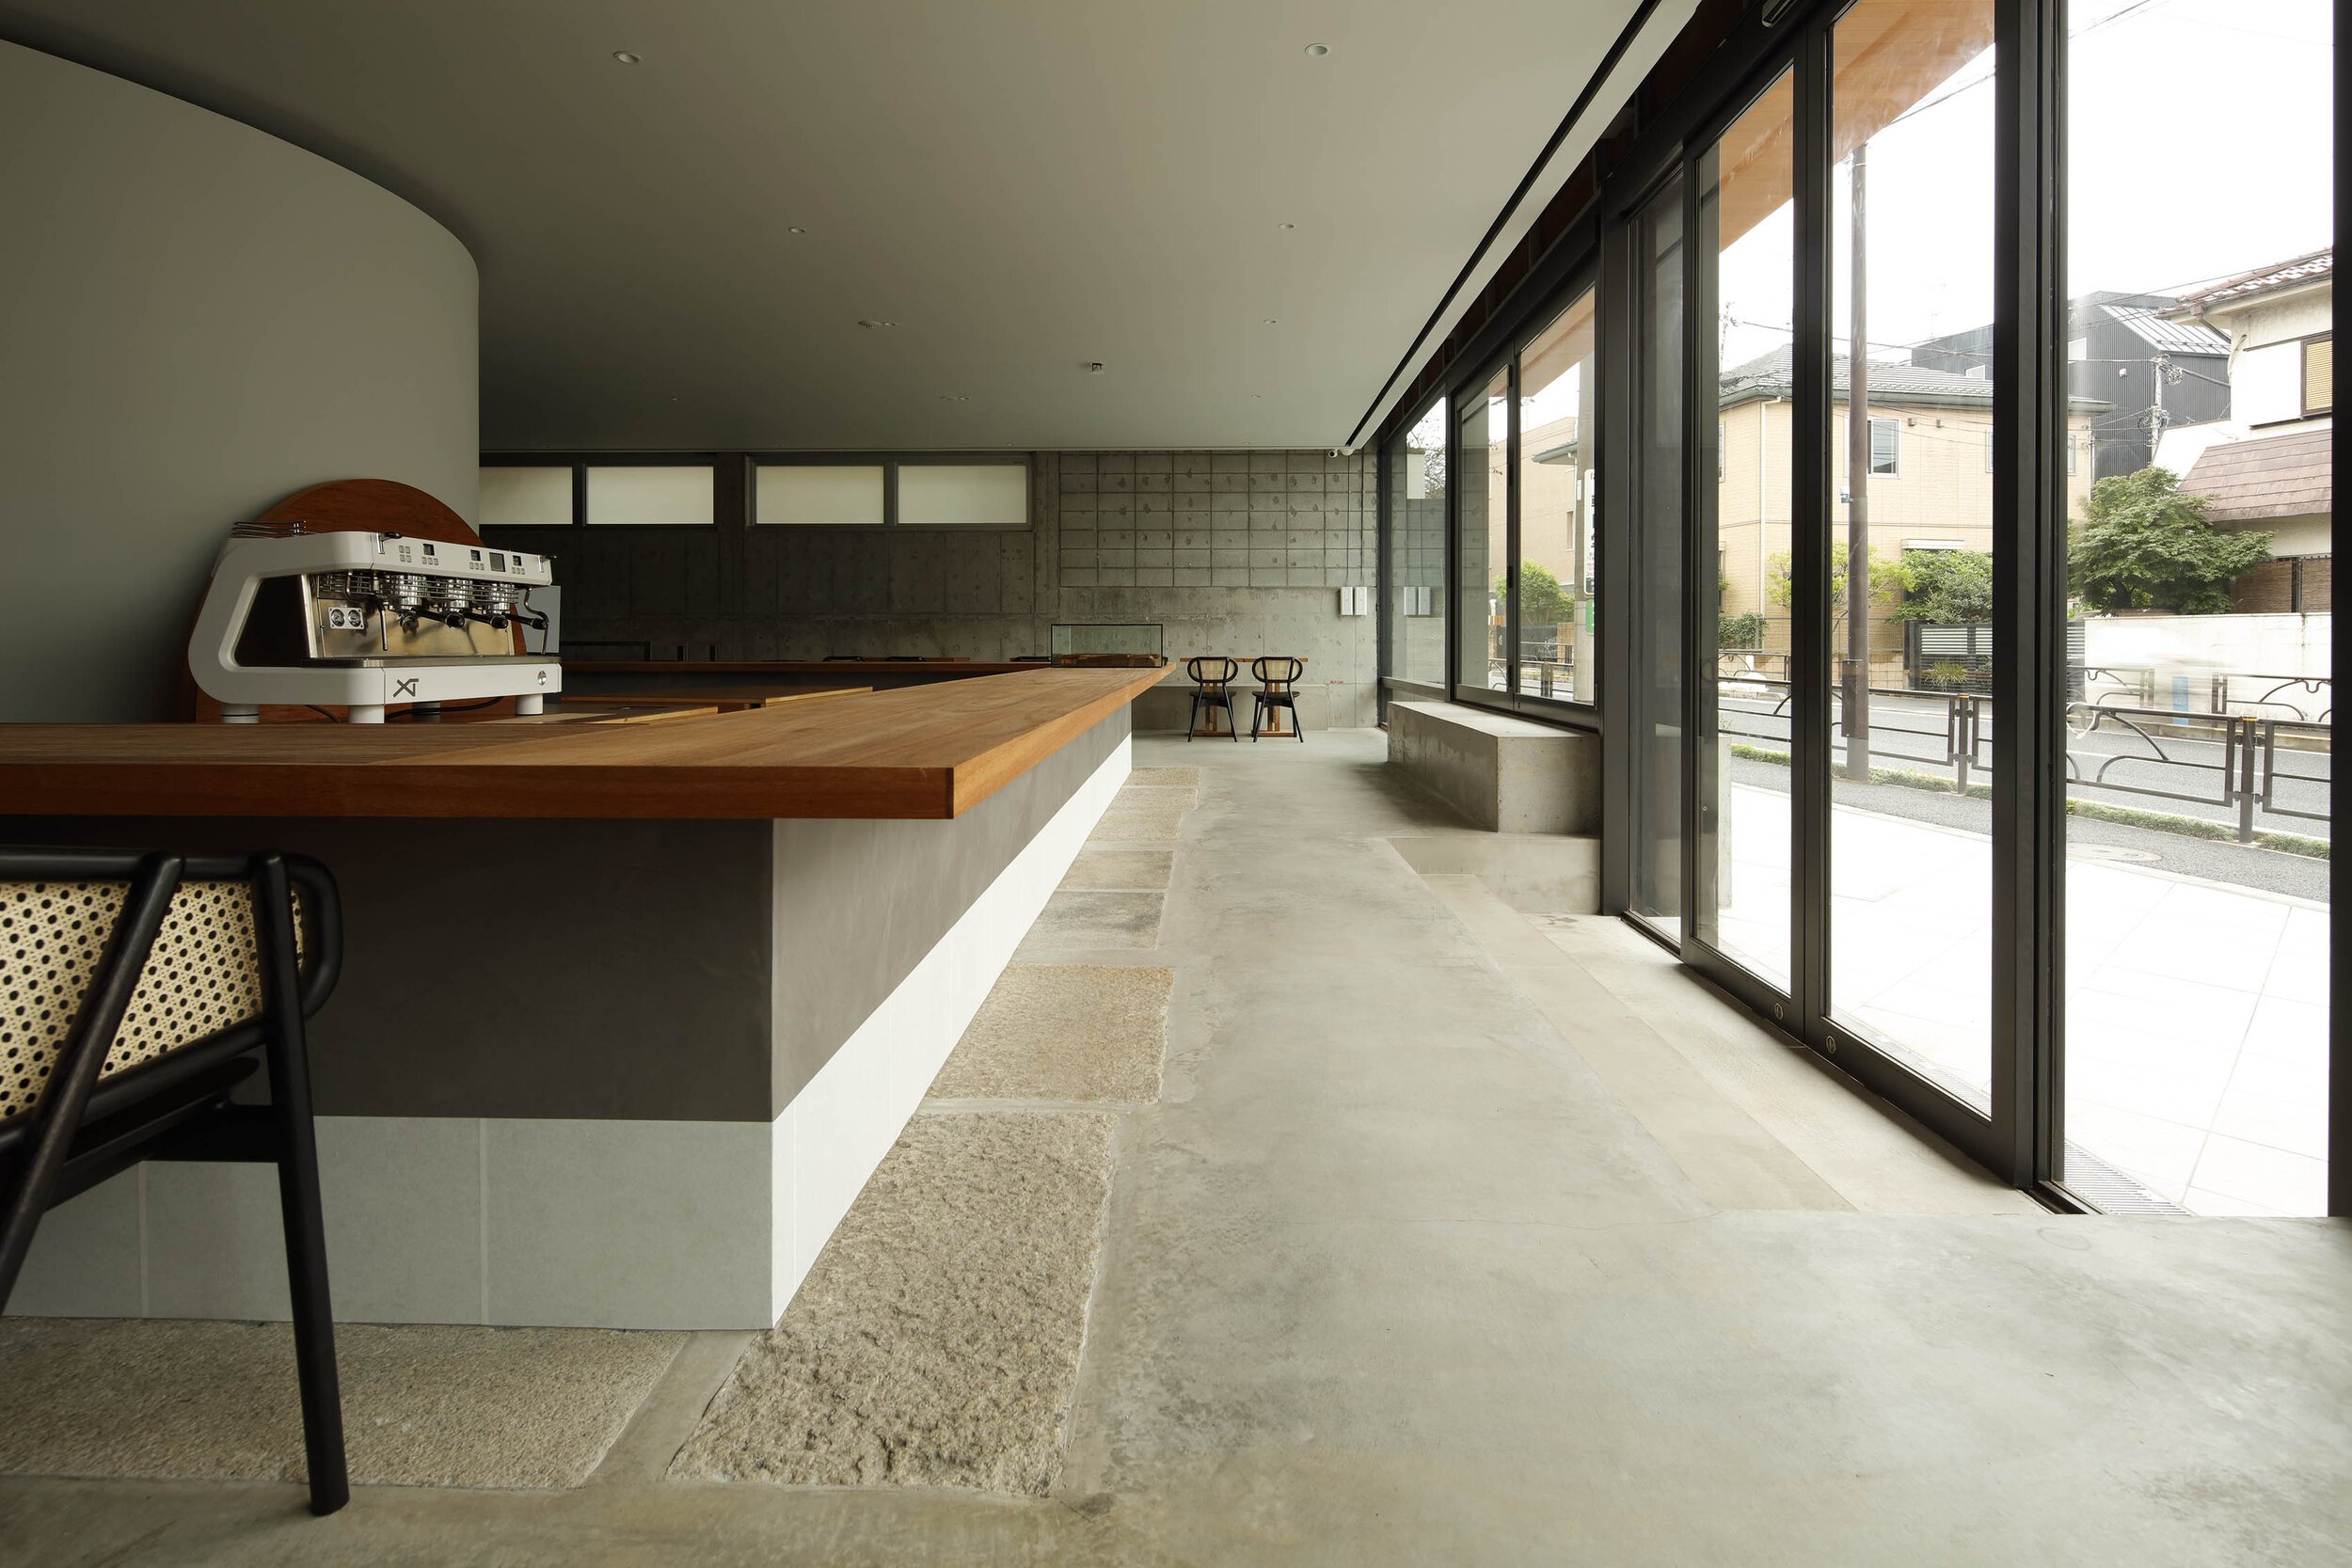  Yusuke Seki Studioの関祐介がデザインしたカフェOgawa Coffee Laboratoryのエントランスまわり 